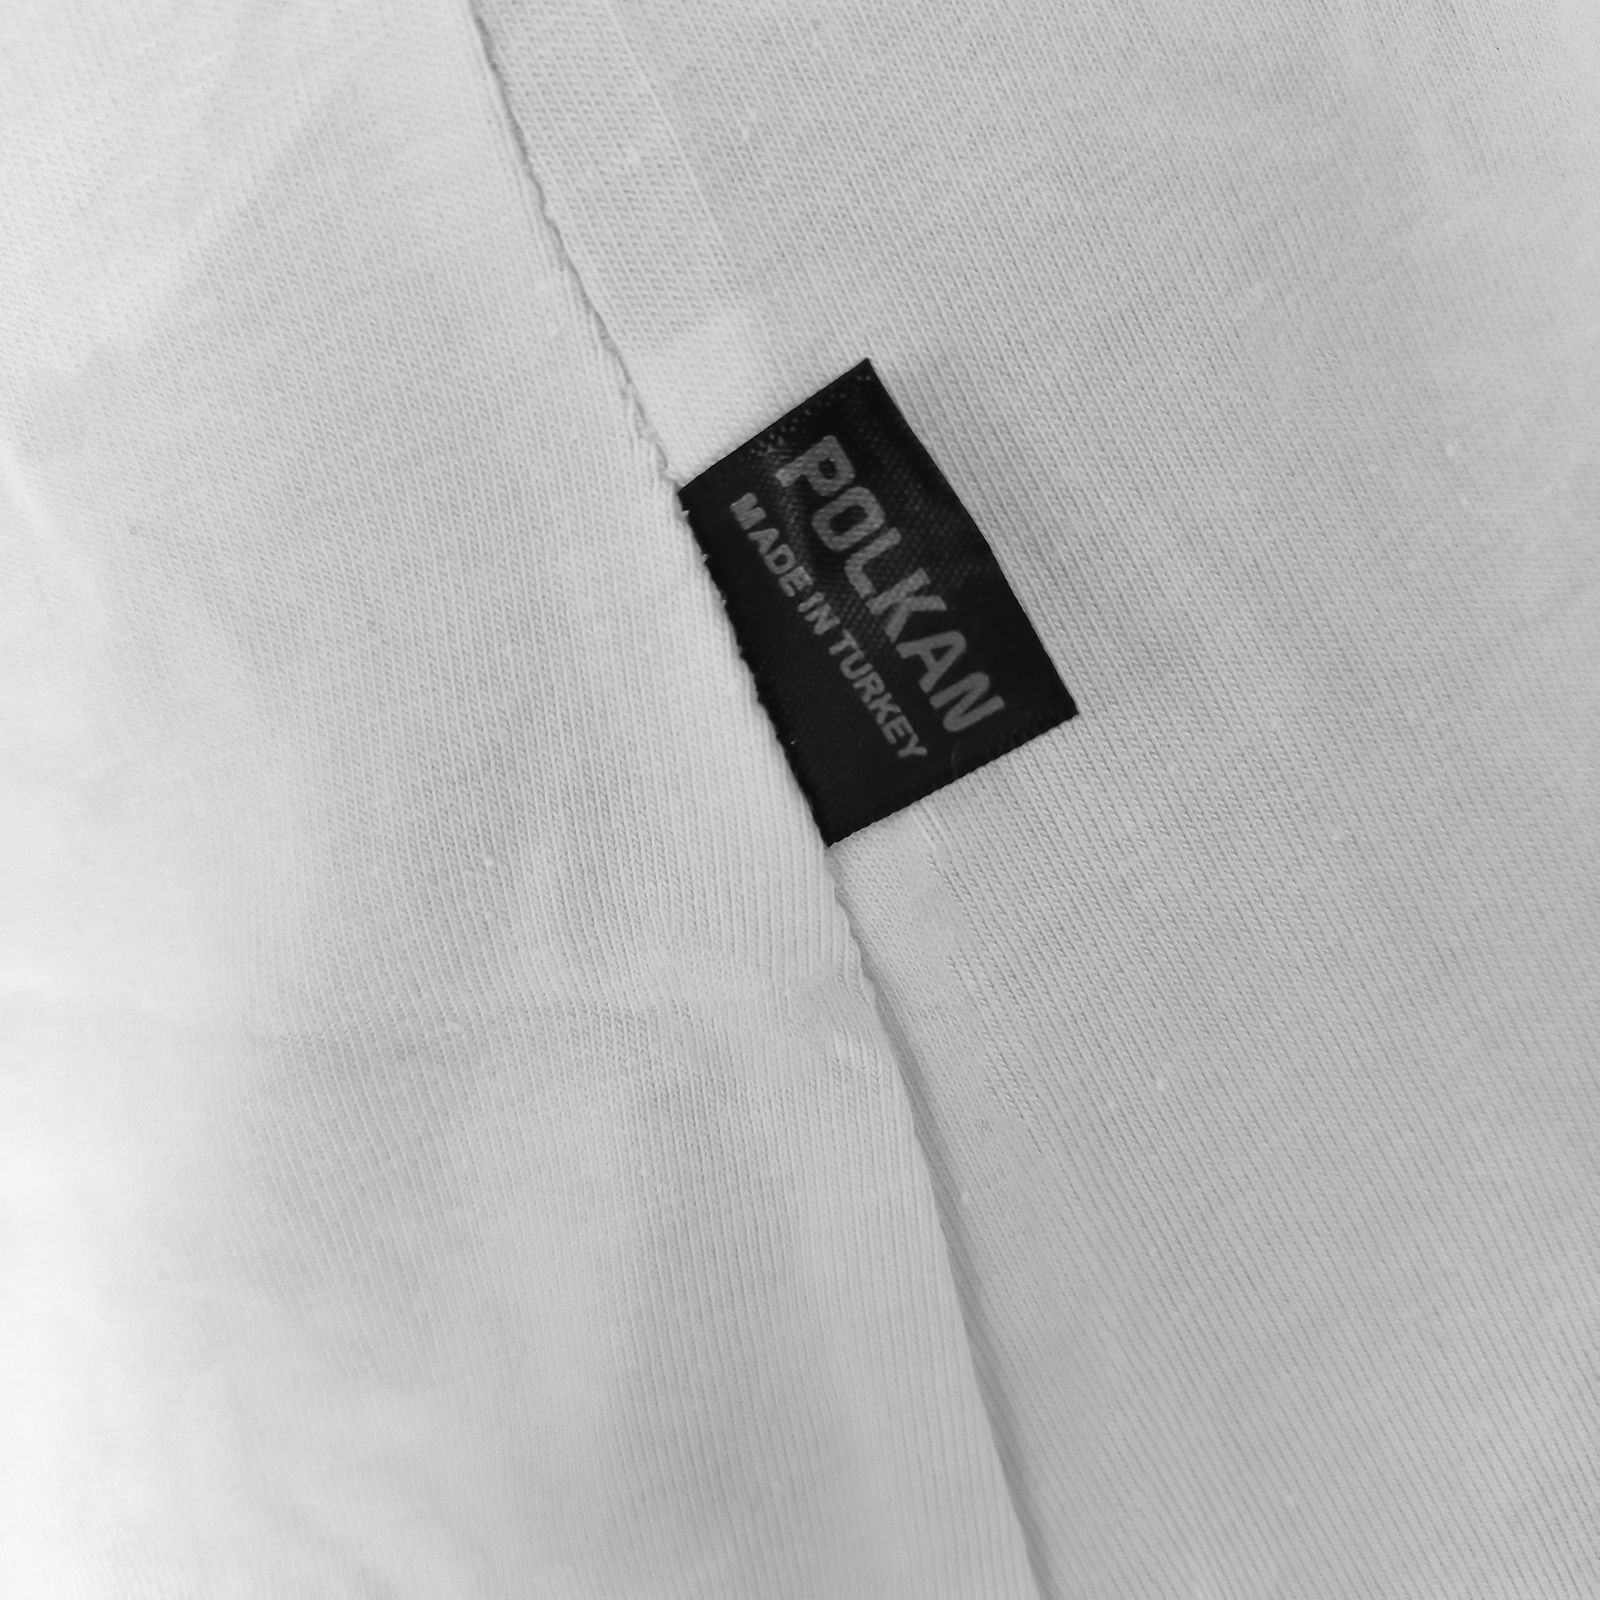 تی شرت آستین کوتاه زنانه پلکان مدل 2266 رنگ سفید -  - 4